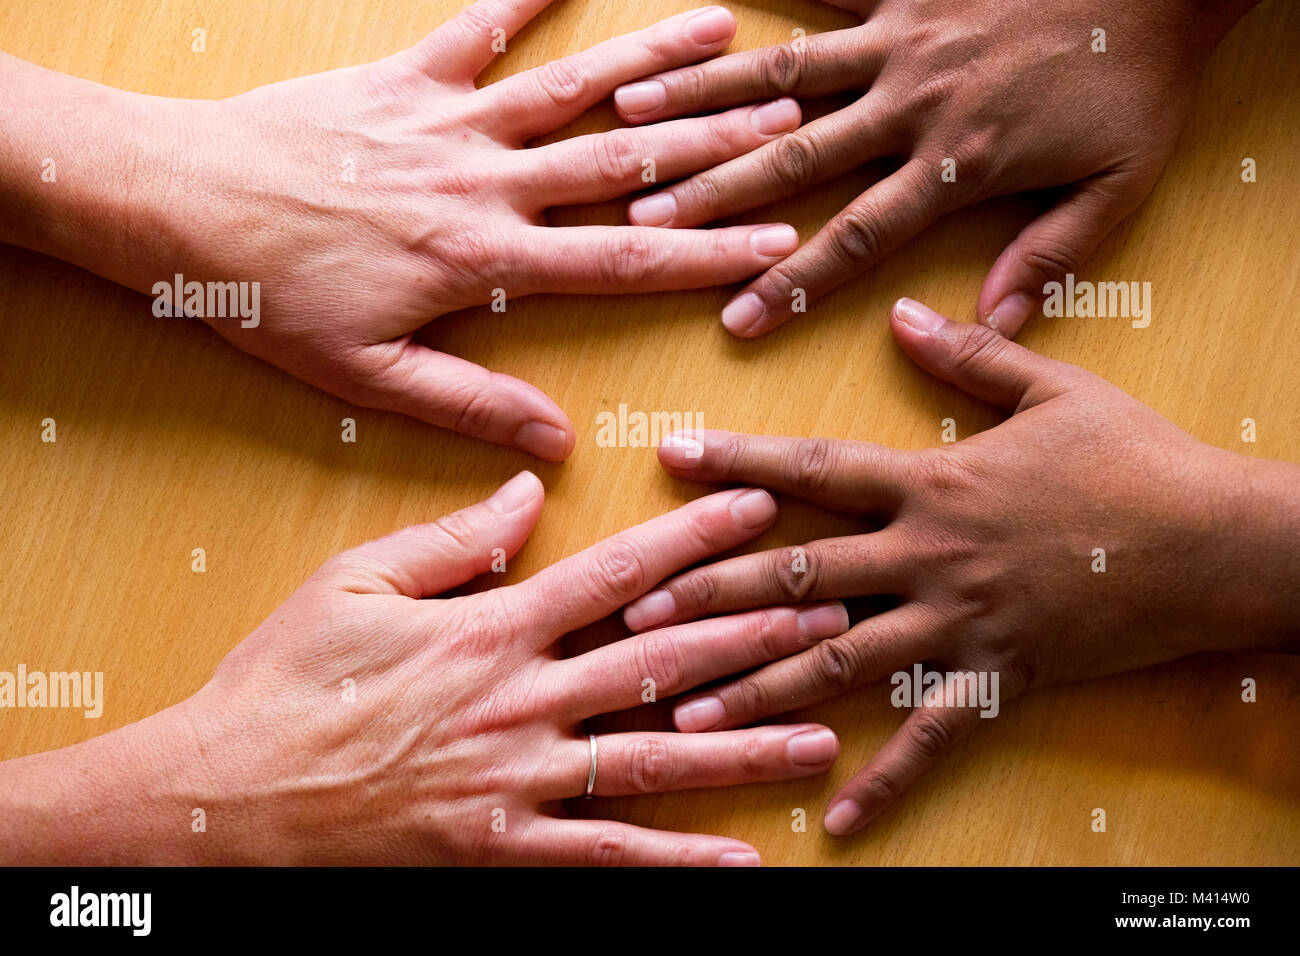 Regarder sur cinquante quatre ans femme mains distribués, posé à plat sur une table, les deux mains sur la gauche une mains asiatiques et les deux sur la droite un Banque D'Images